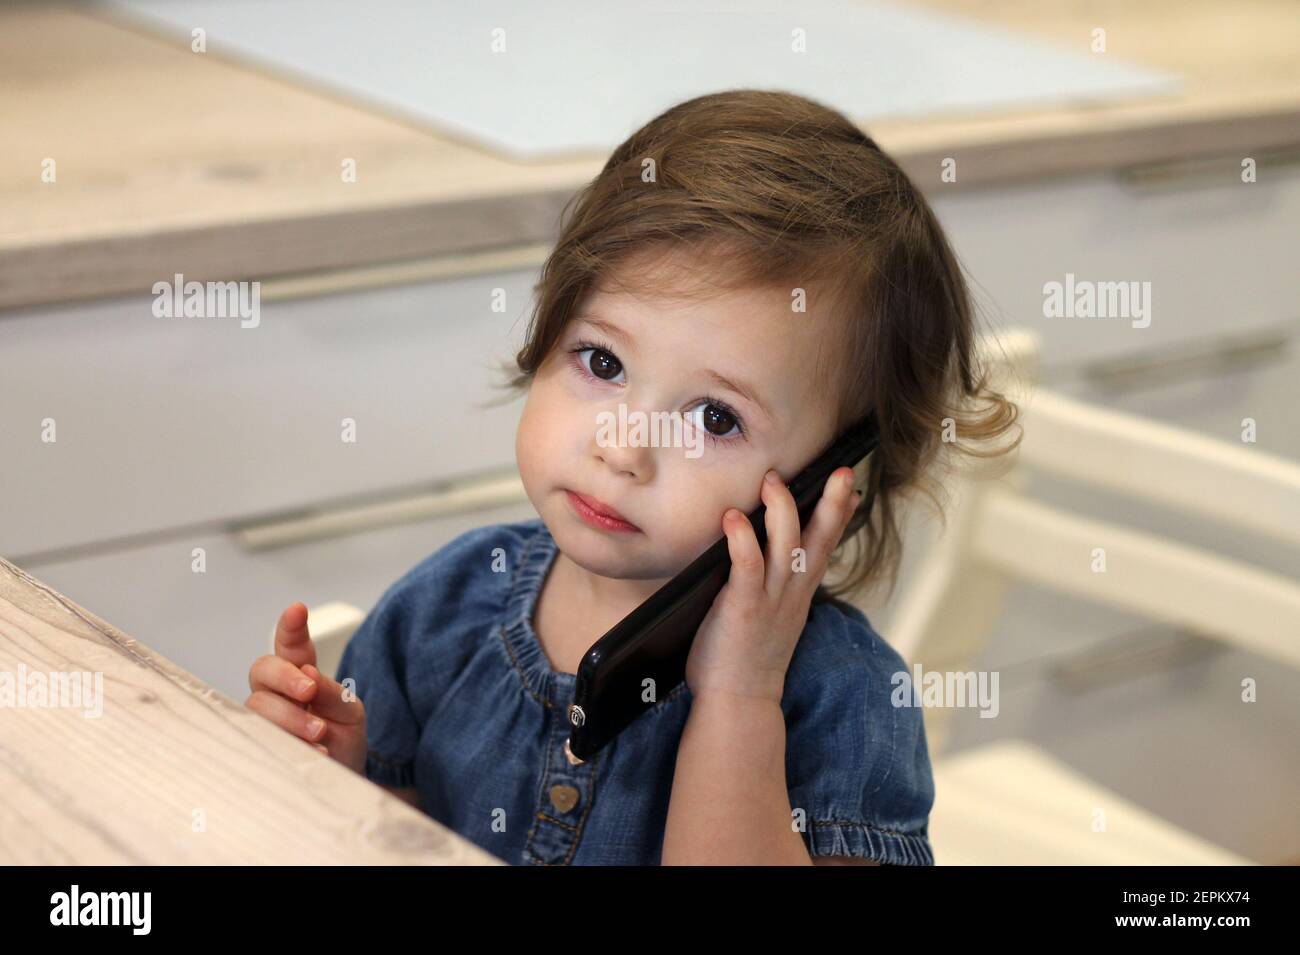 Nettes kleines dunkelhaariges Mädchen 1,5-2,5 in einem Jeanskleid spricht  mit jemandem auf einem Smartphone in der Küche. Baby vermissen  Kommunikation mit Verwandten. Se Stockfotografie - Alamy